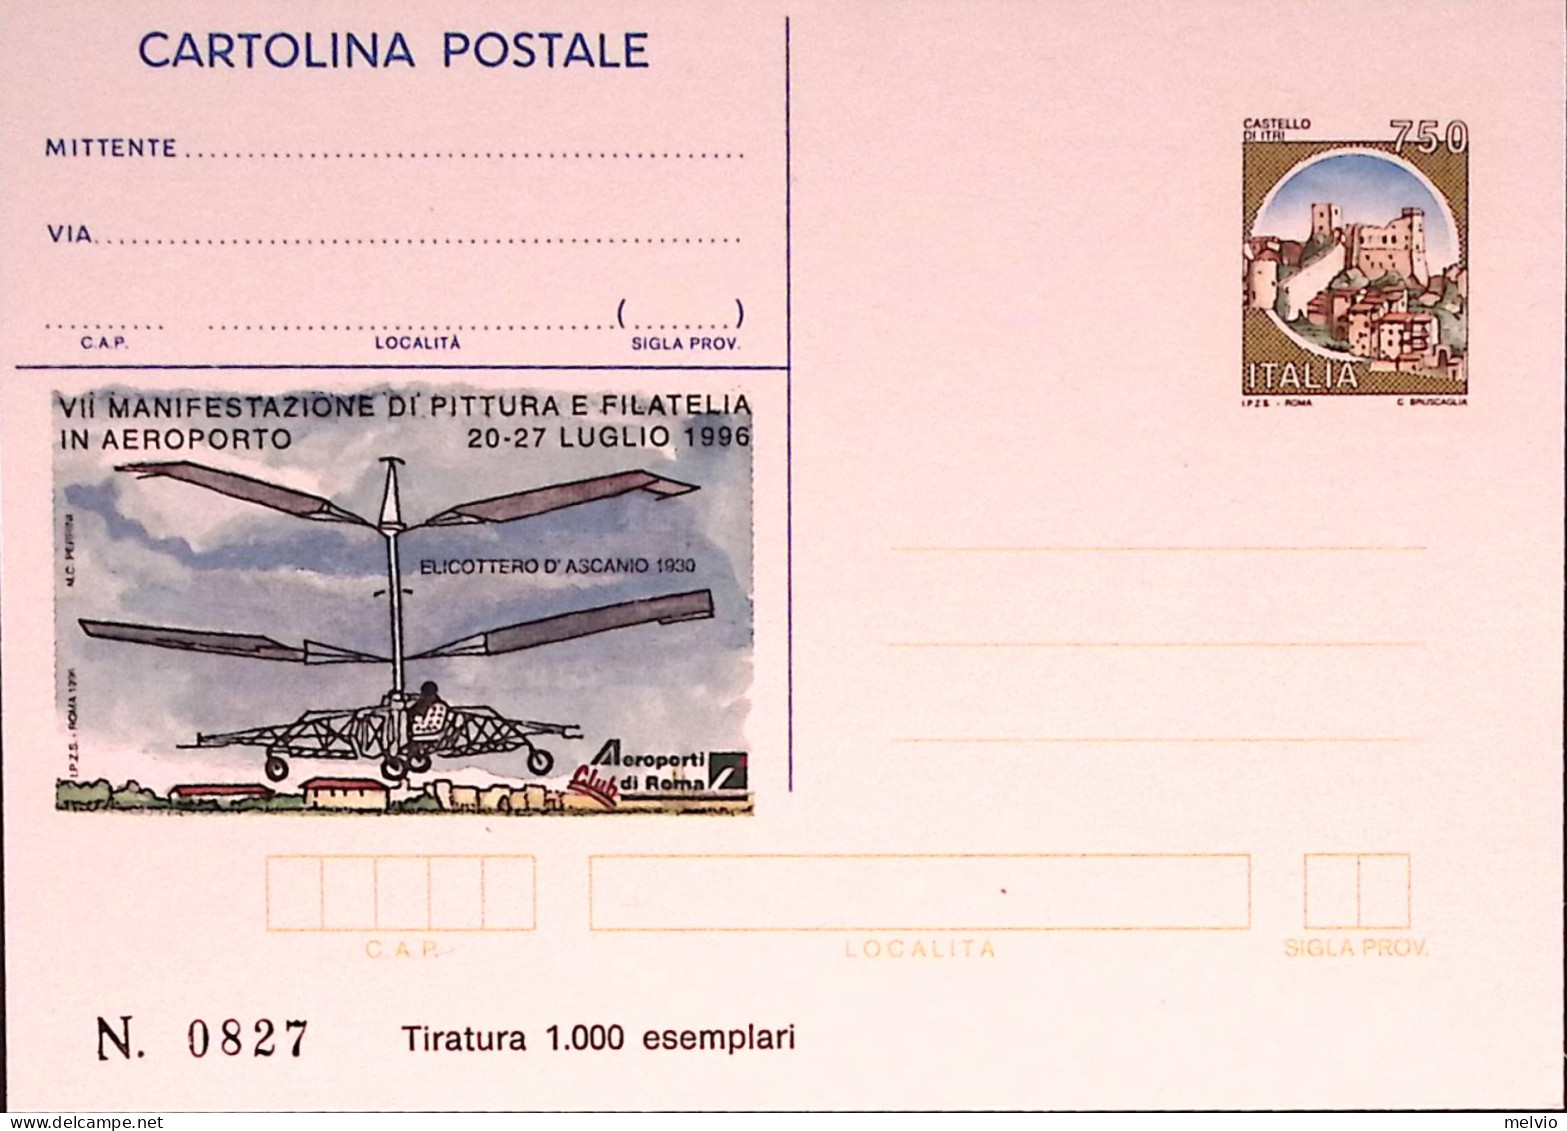 1996-CLUB AEROPORTI ROMA Cartolina Postale IPZS Lire 750 Nuova - Ganzsachen